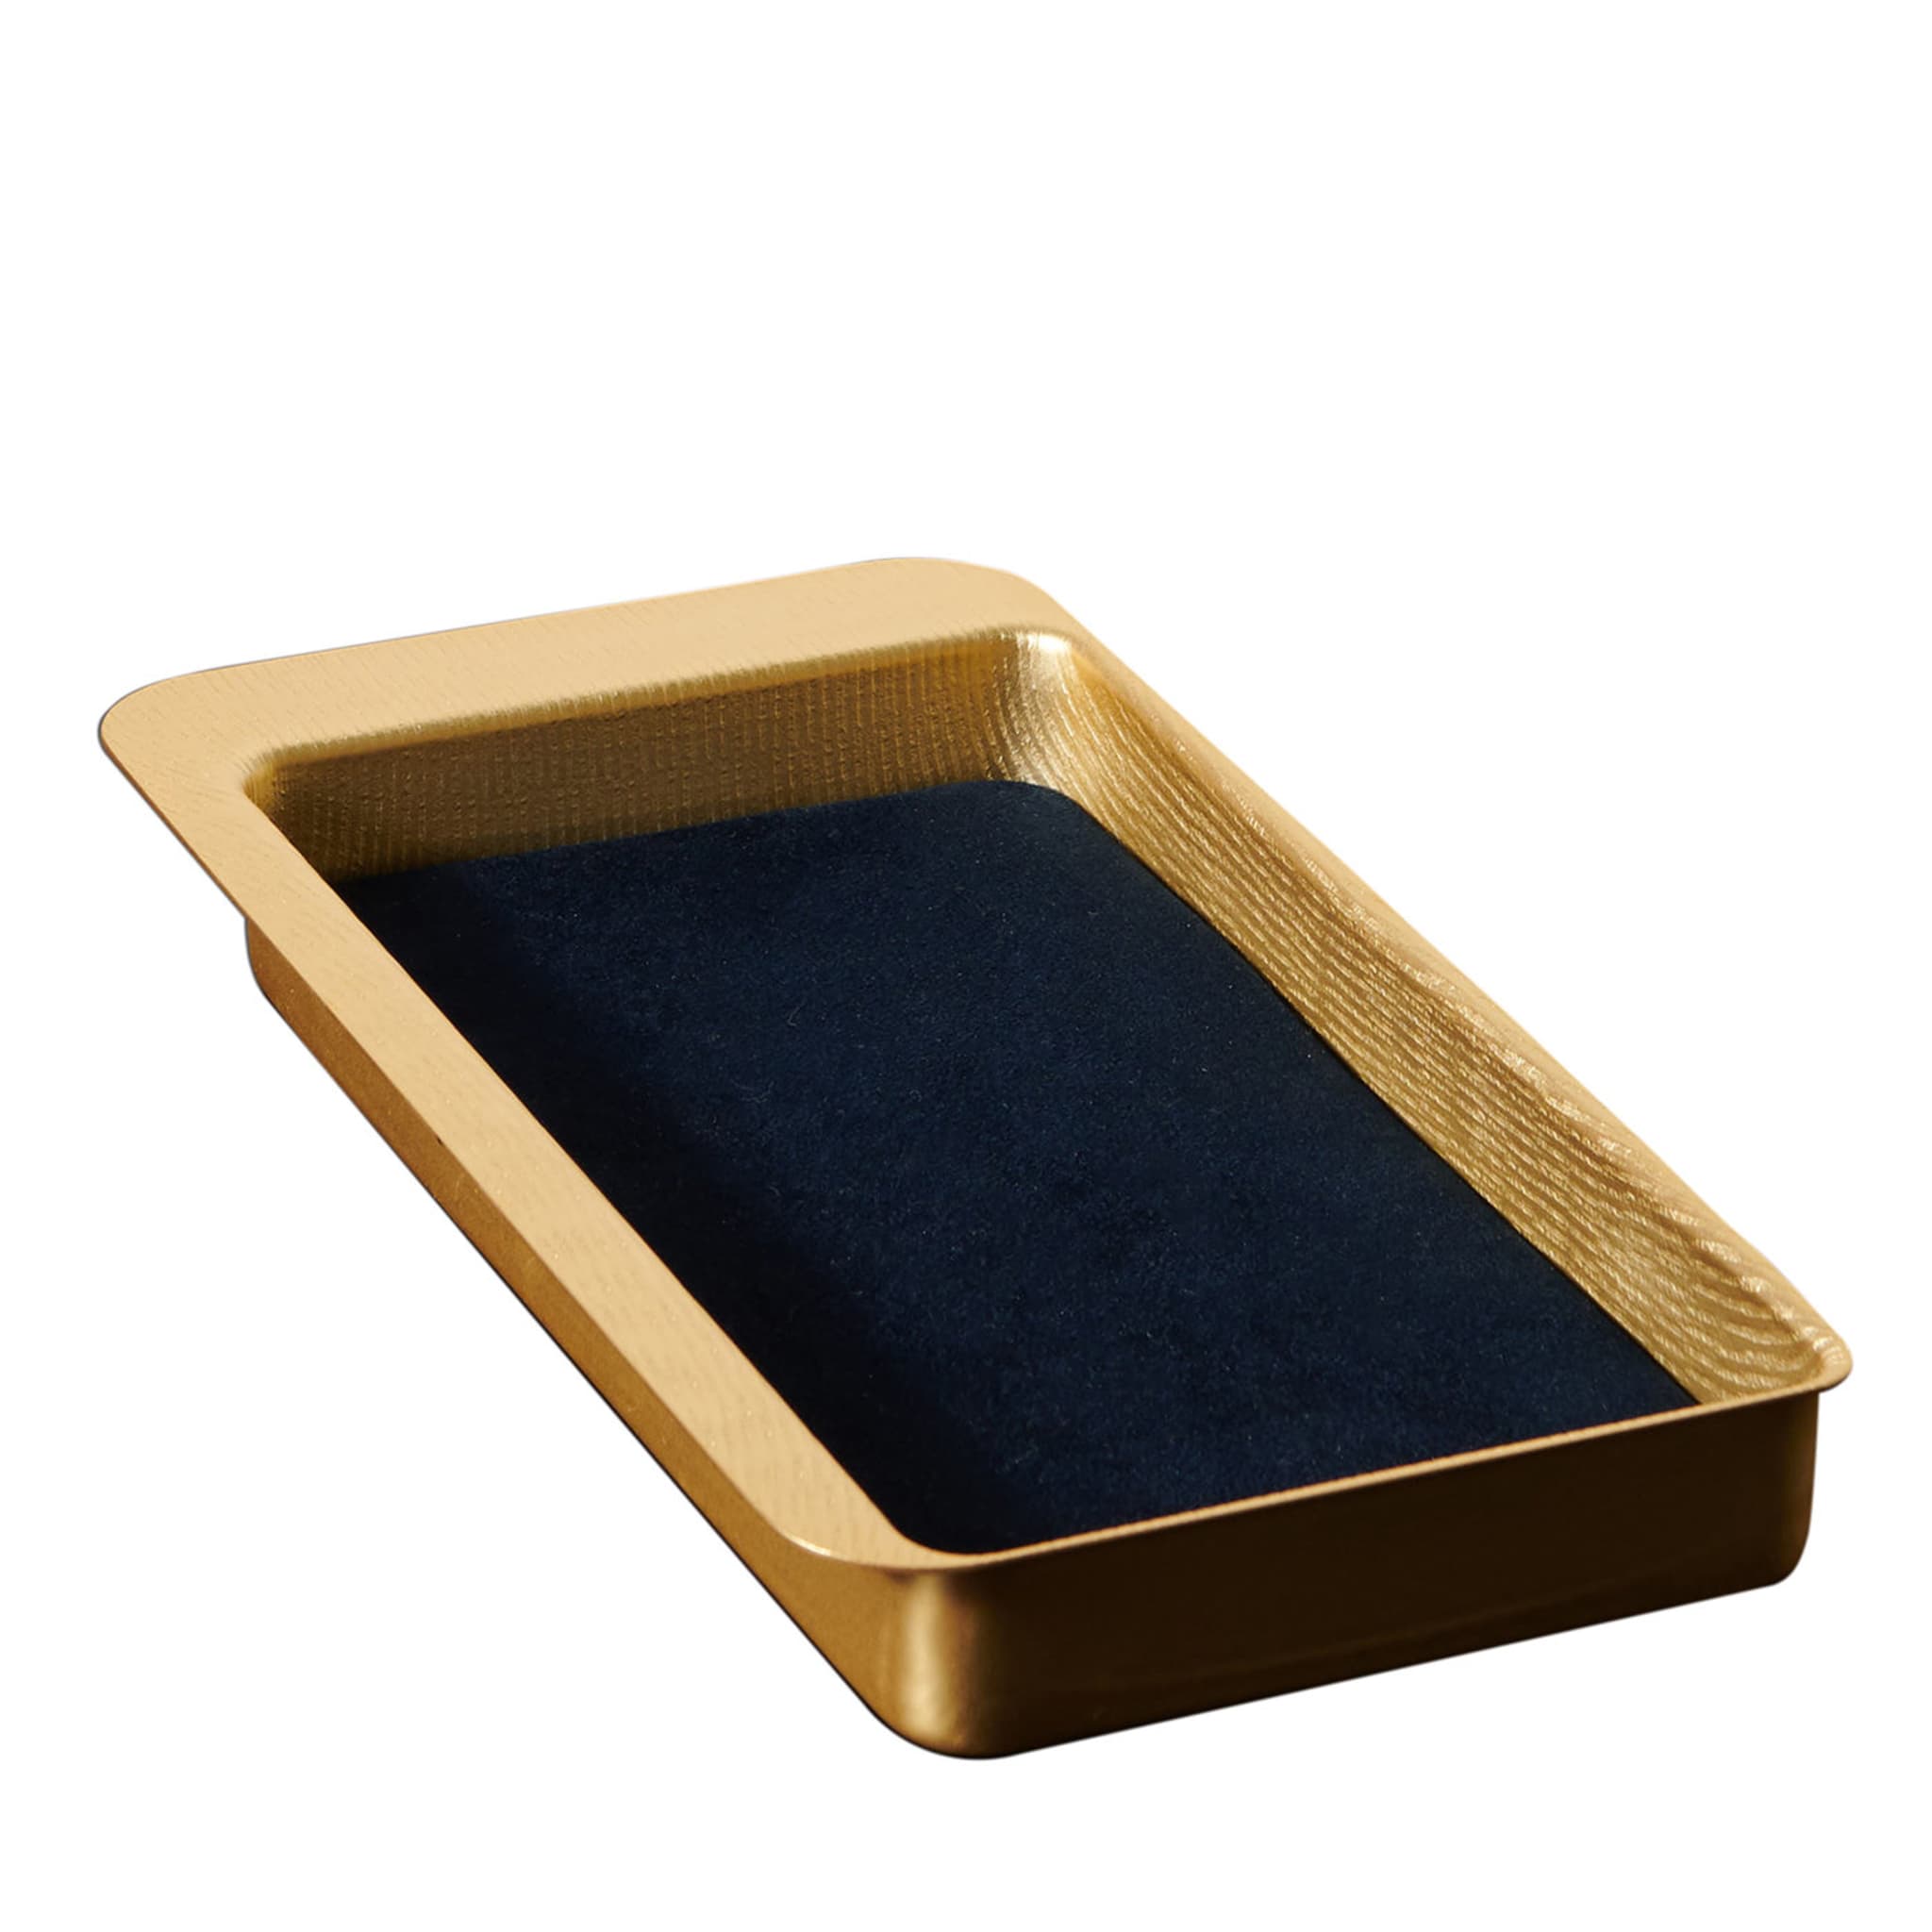 Firenze Rechteckige Gold und Blau Leere Tasche Tablett - Hauptansicht